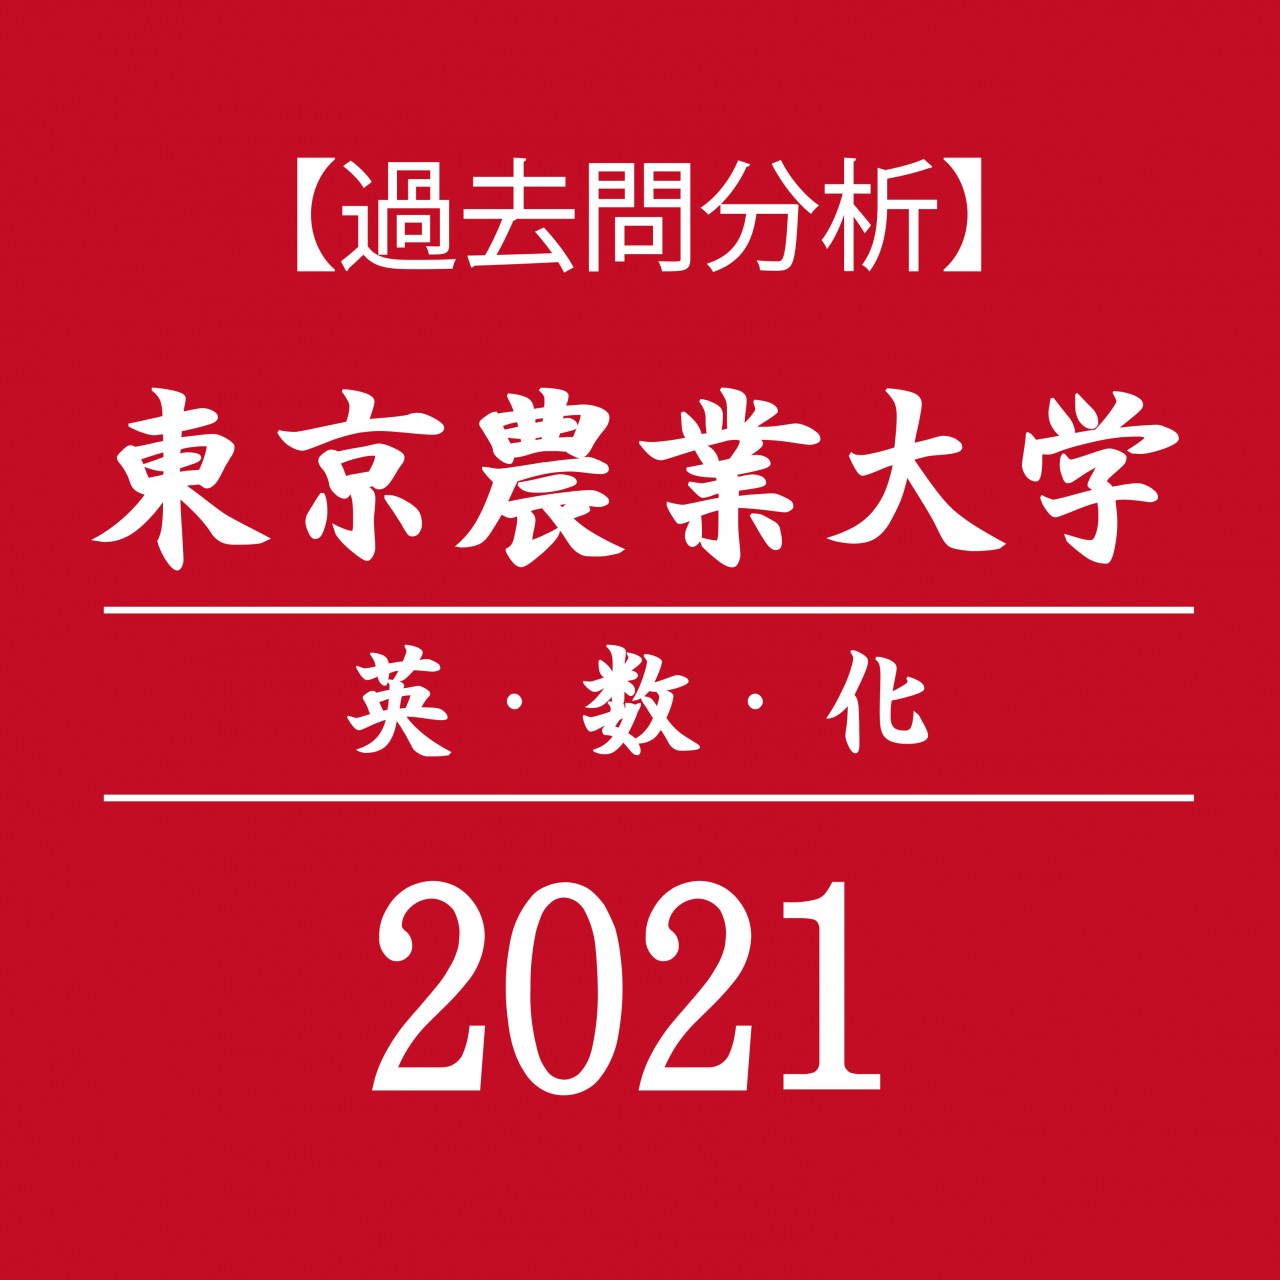 【過去問分析】2021年度 東京農業大学　英語・数学・化学